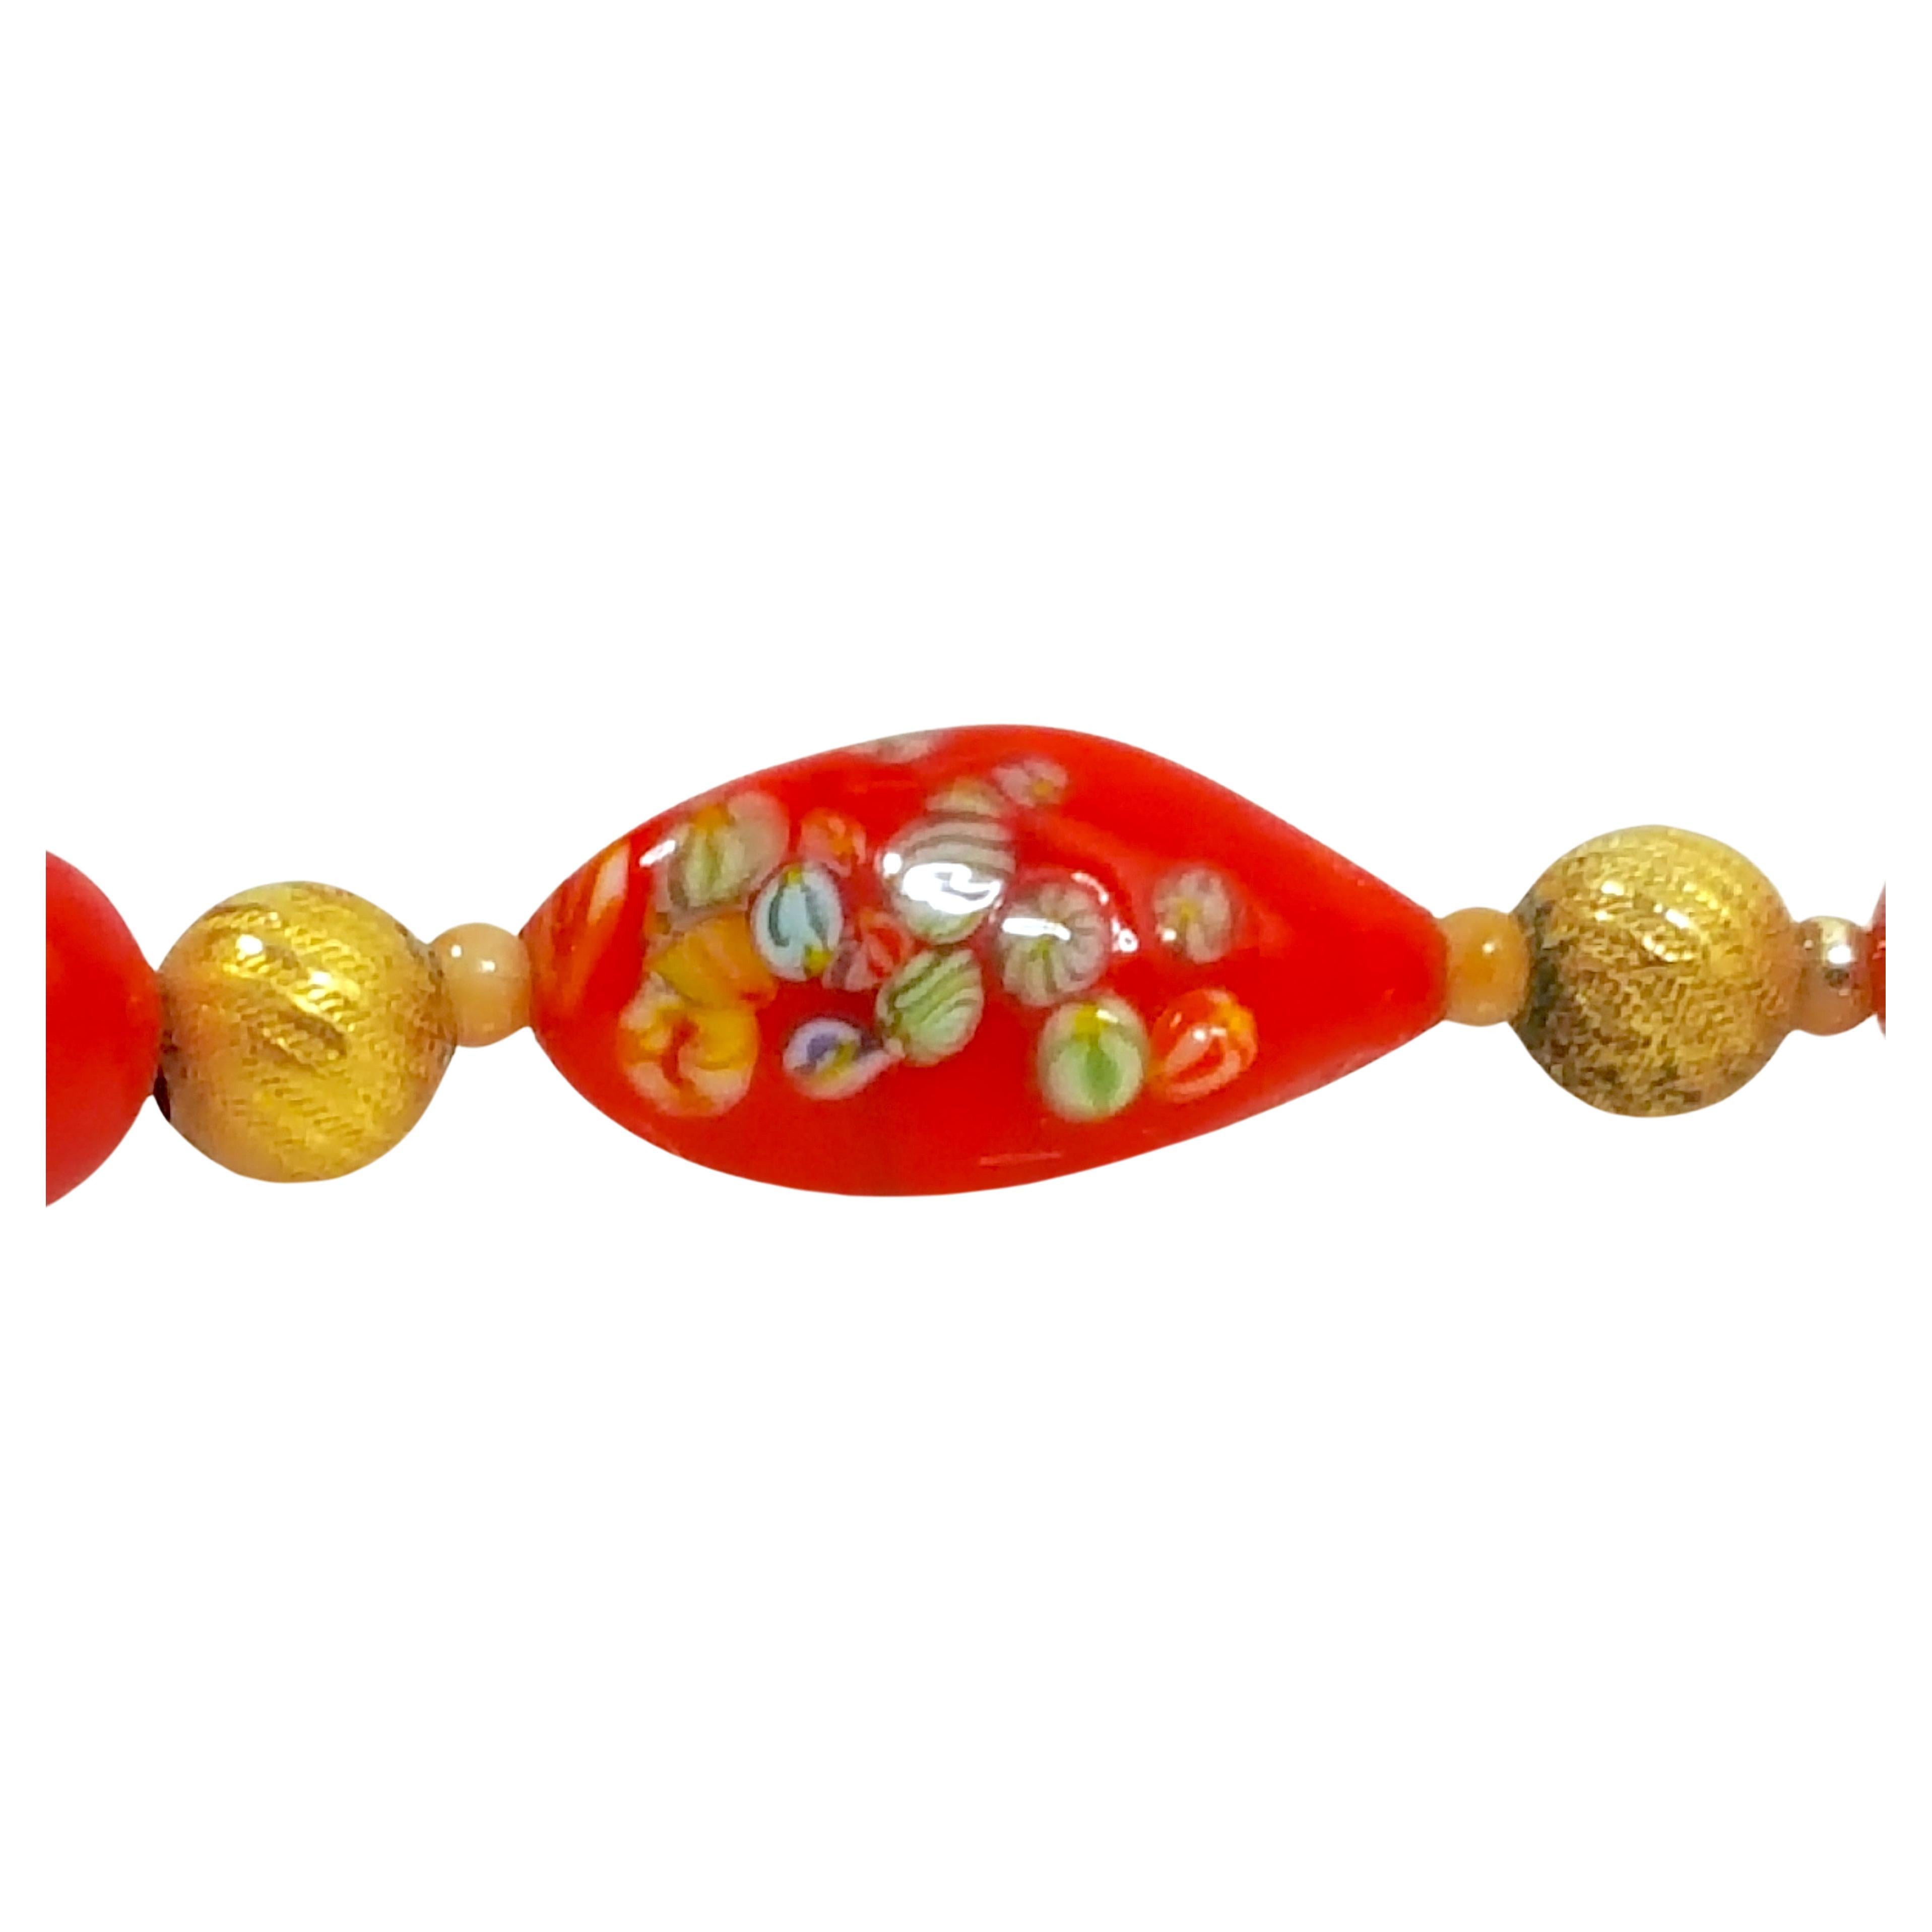 Dieses antike spätviktorianische italienische Murano-Glas Halskette unsigned verfügt über drei längliche rote Perlen mit Miniatur-Multicolor gewirbelt-Streifen-Muster mit der Millefiori-Technik gemacht, zusammen mit Runden Perlen, die Gelb-Gold